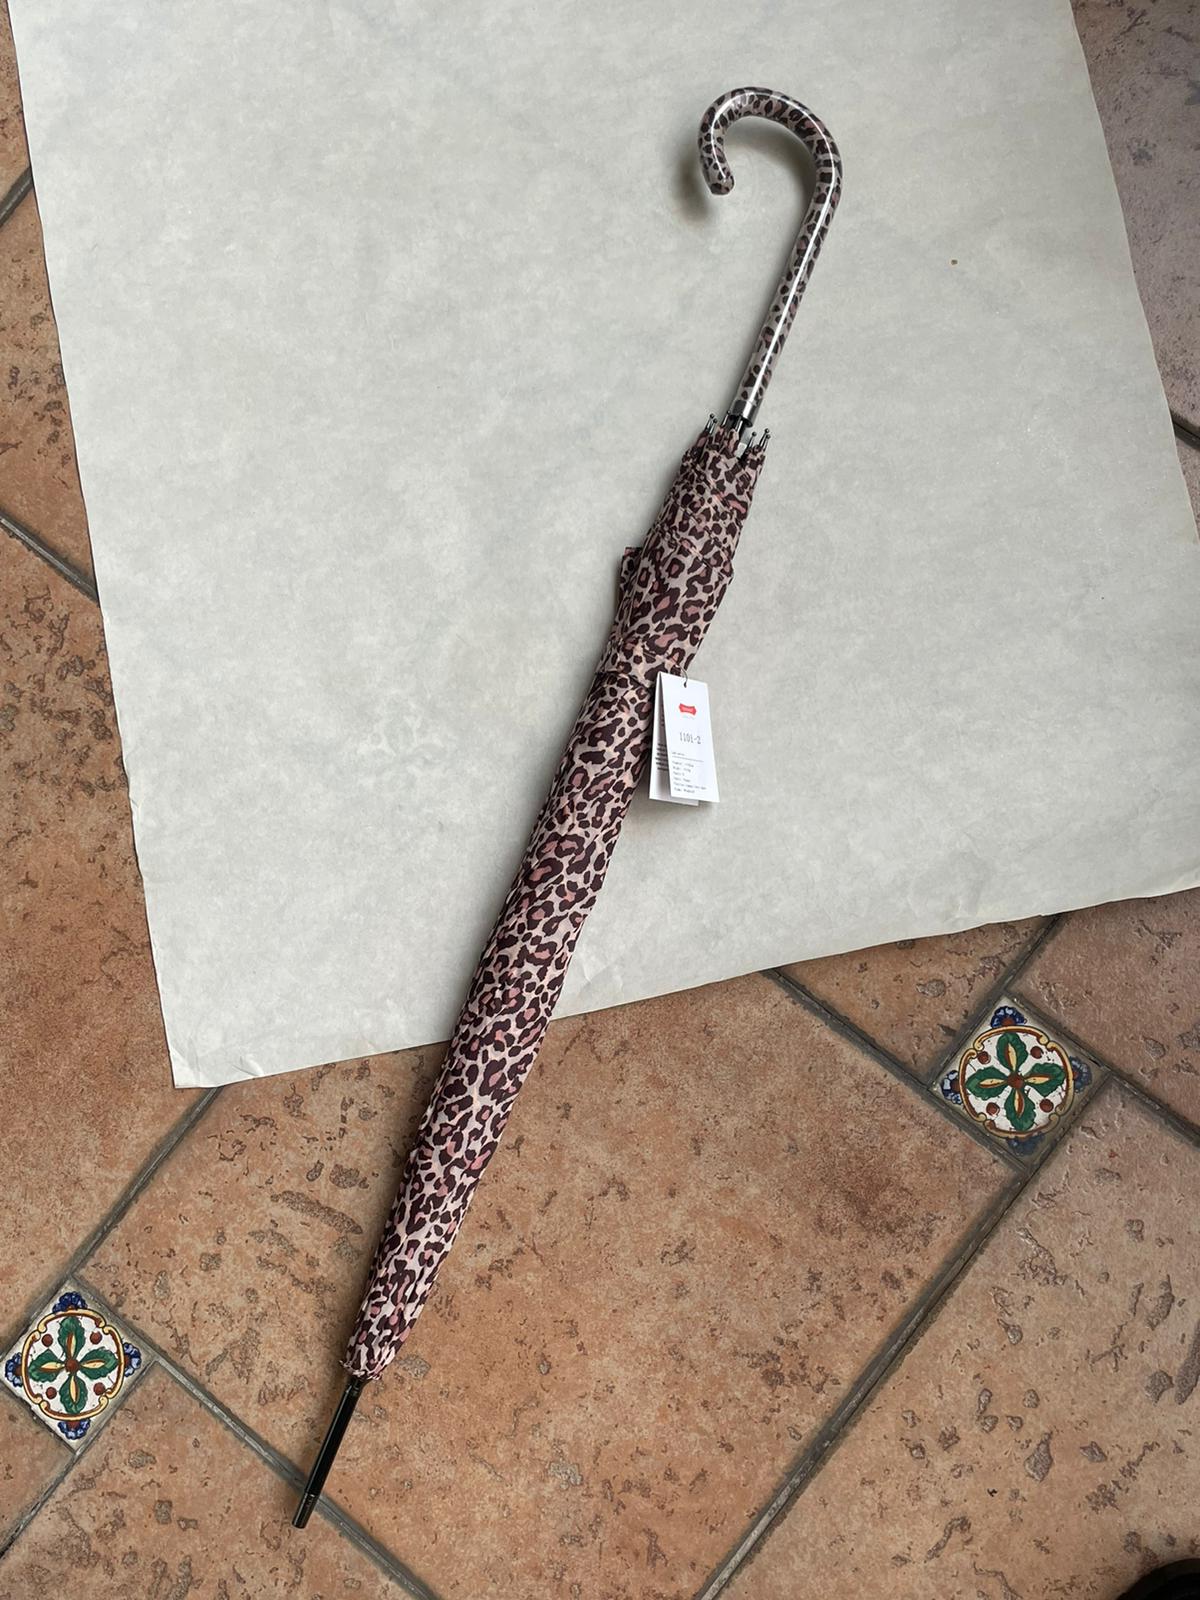 U-Handle Cheetah Umbrella by Veronique